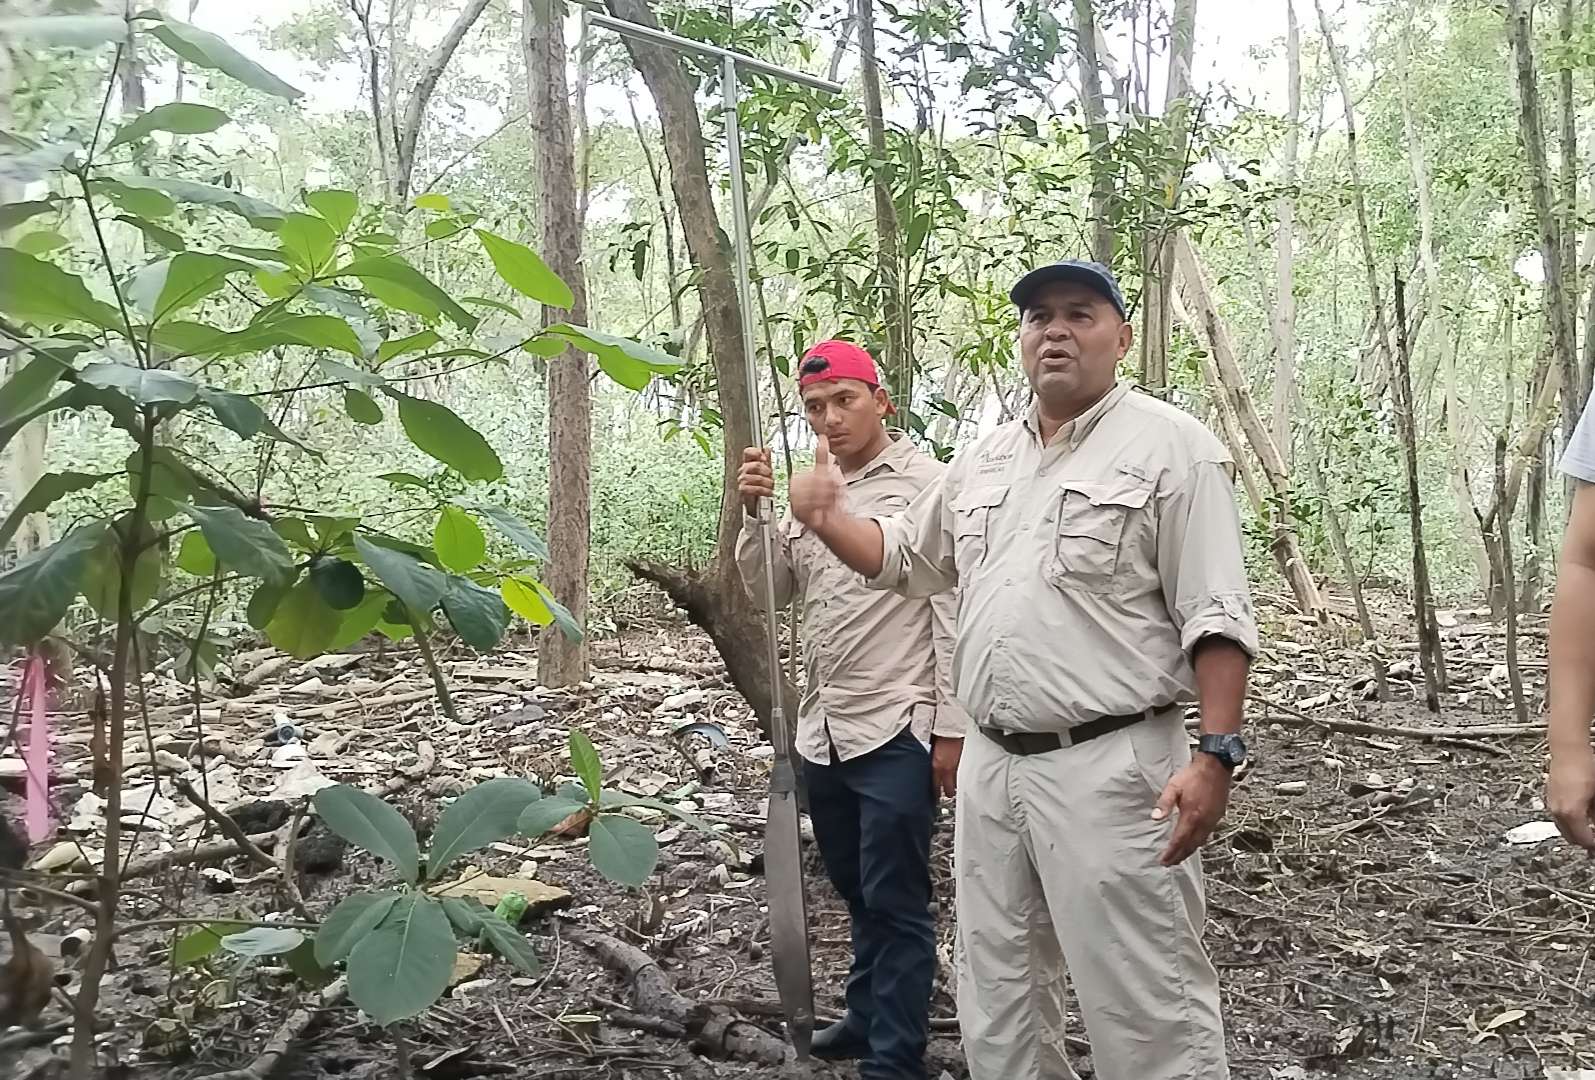 Técnicos e ingenieros explican sobre el muestreo en los manglares. 